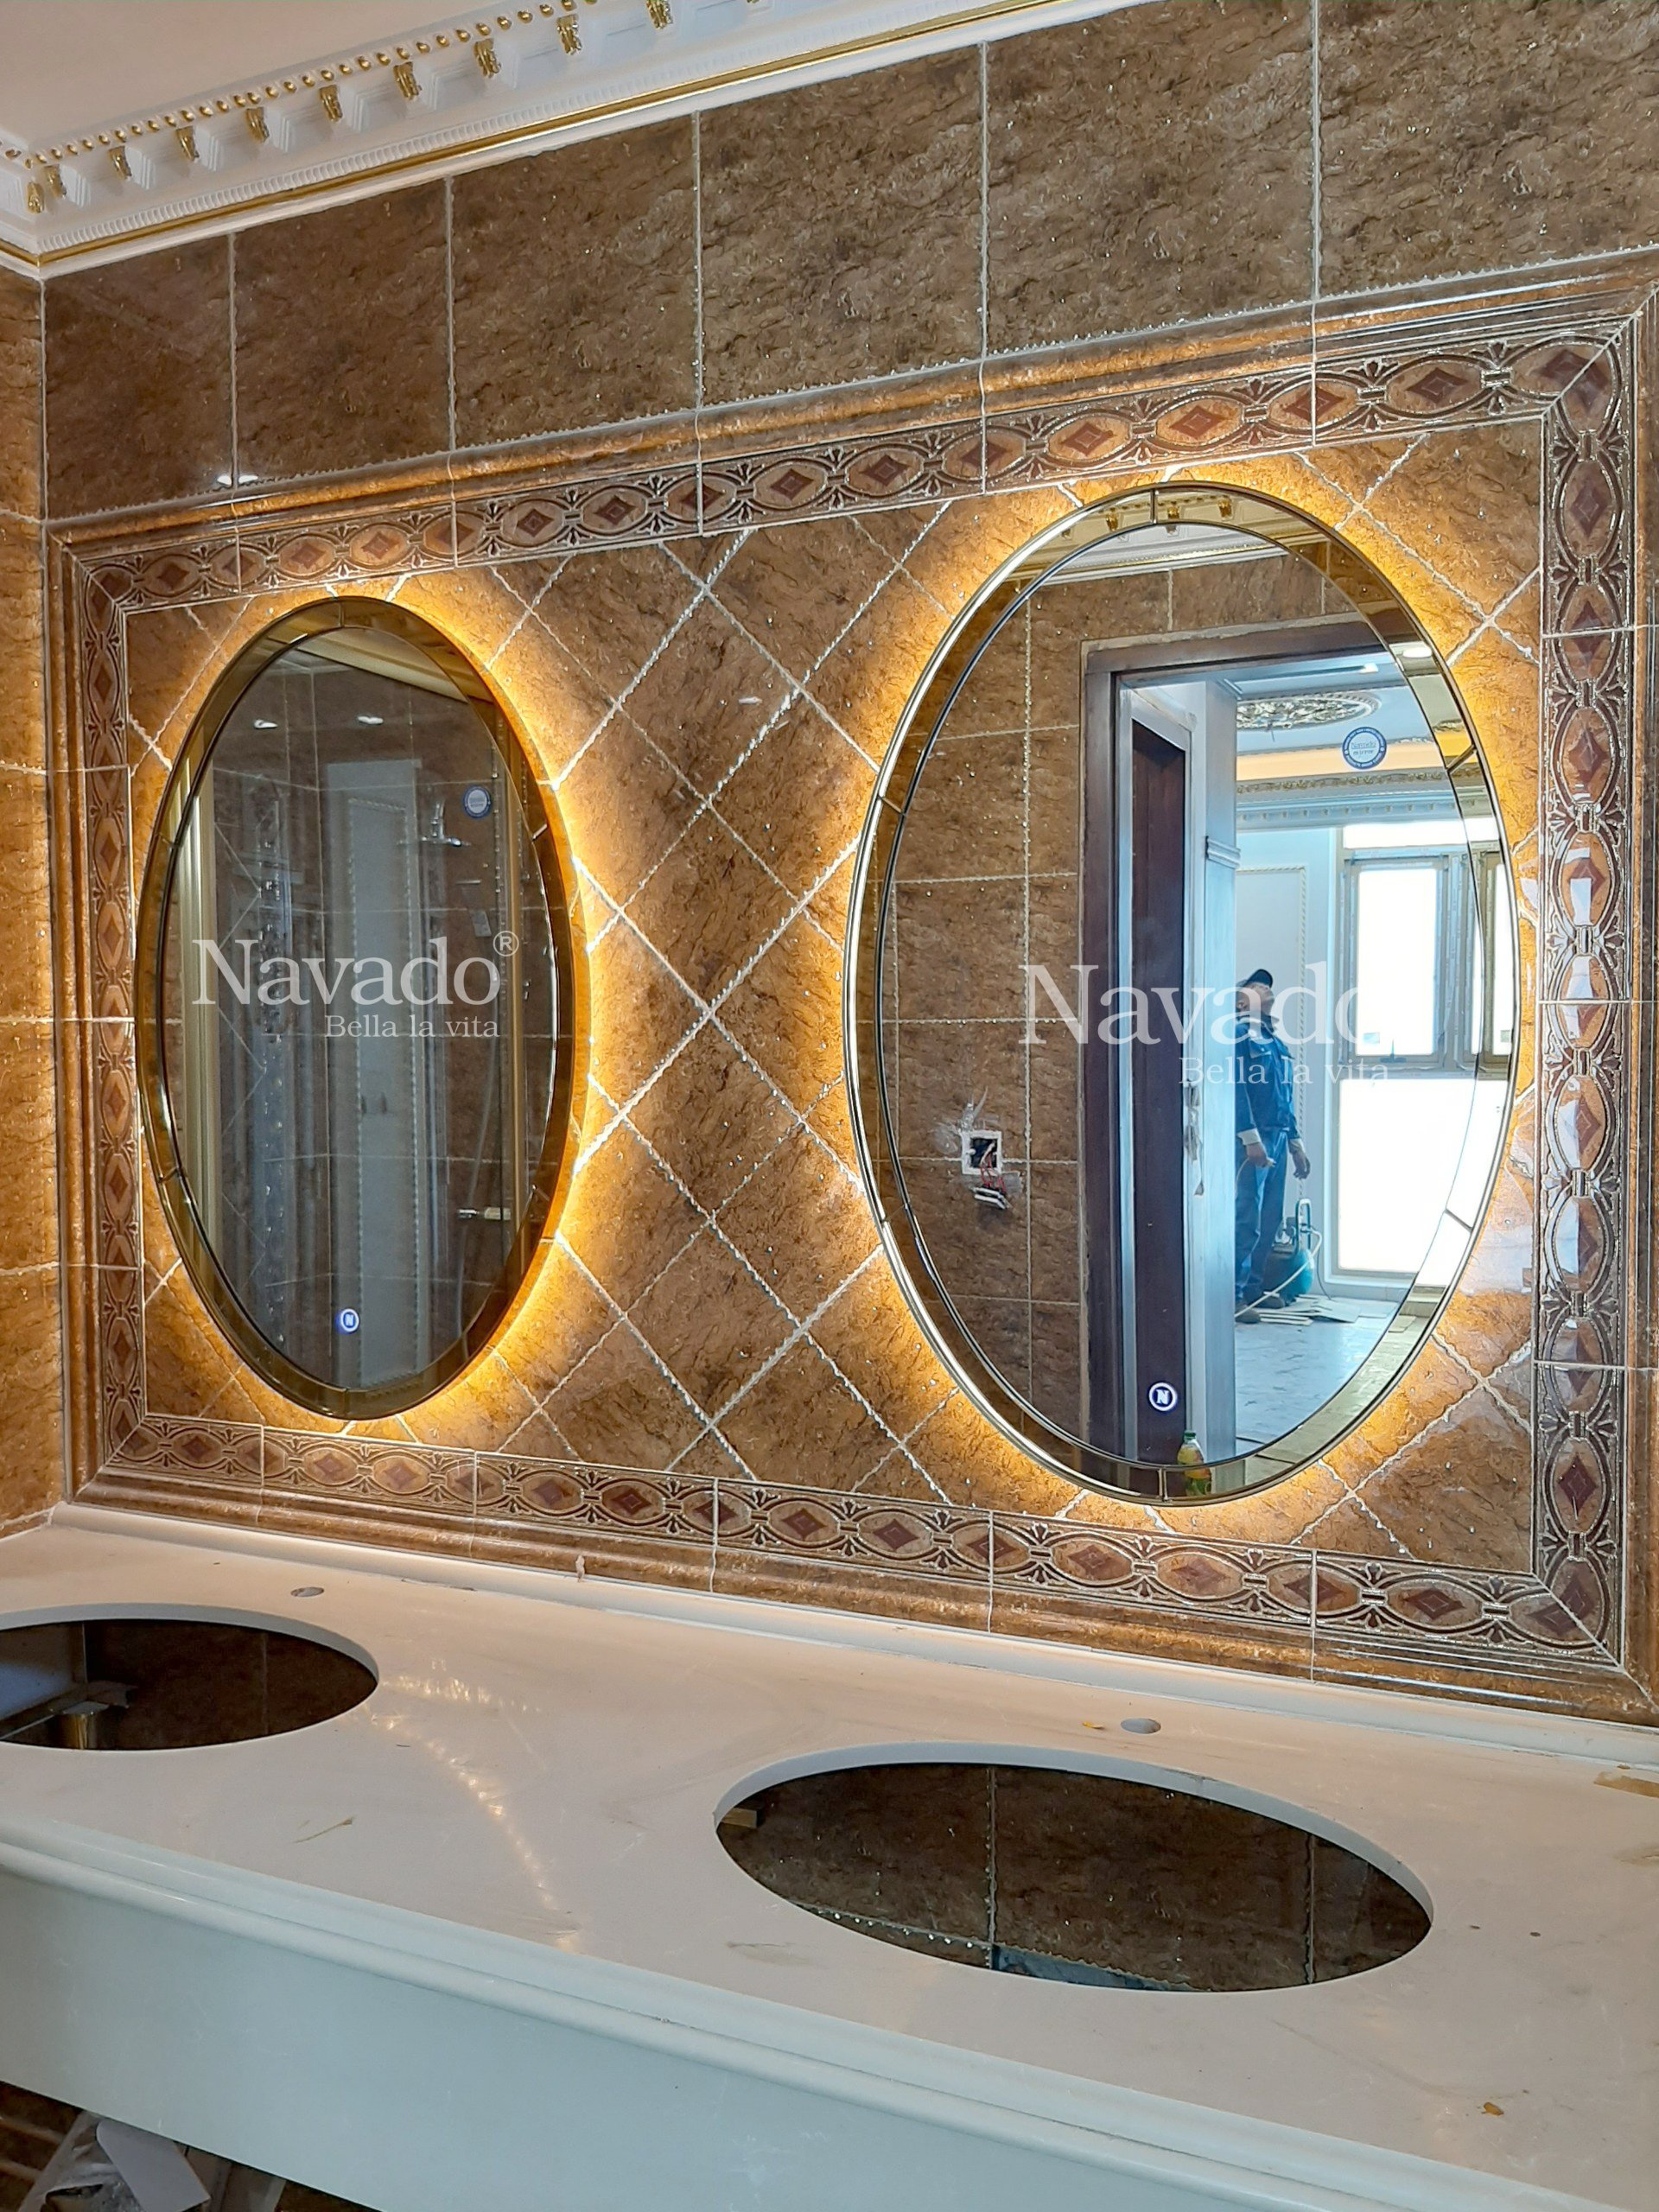 Gương cao cấp khung inox là lựa chọn tuyệt vời để trang trí cho phòng tắm của bạn. Với chất liệu inox chắc chắn và độ bền cao, mẫu gương này đảm bảo sẽ làm hài lòng các khách hàng khó tính nhất. Điểm nhấn đặc biệt của mẫu gương này là khung inox sáng bóng tạo ra vẻ đẹp rực rỡ cho phòng tắm của bạn.